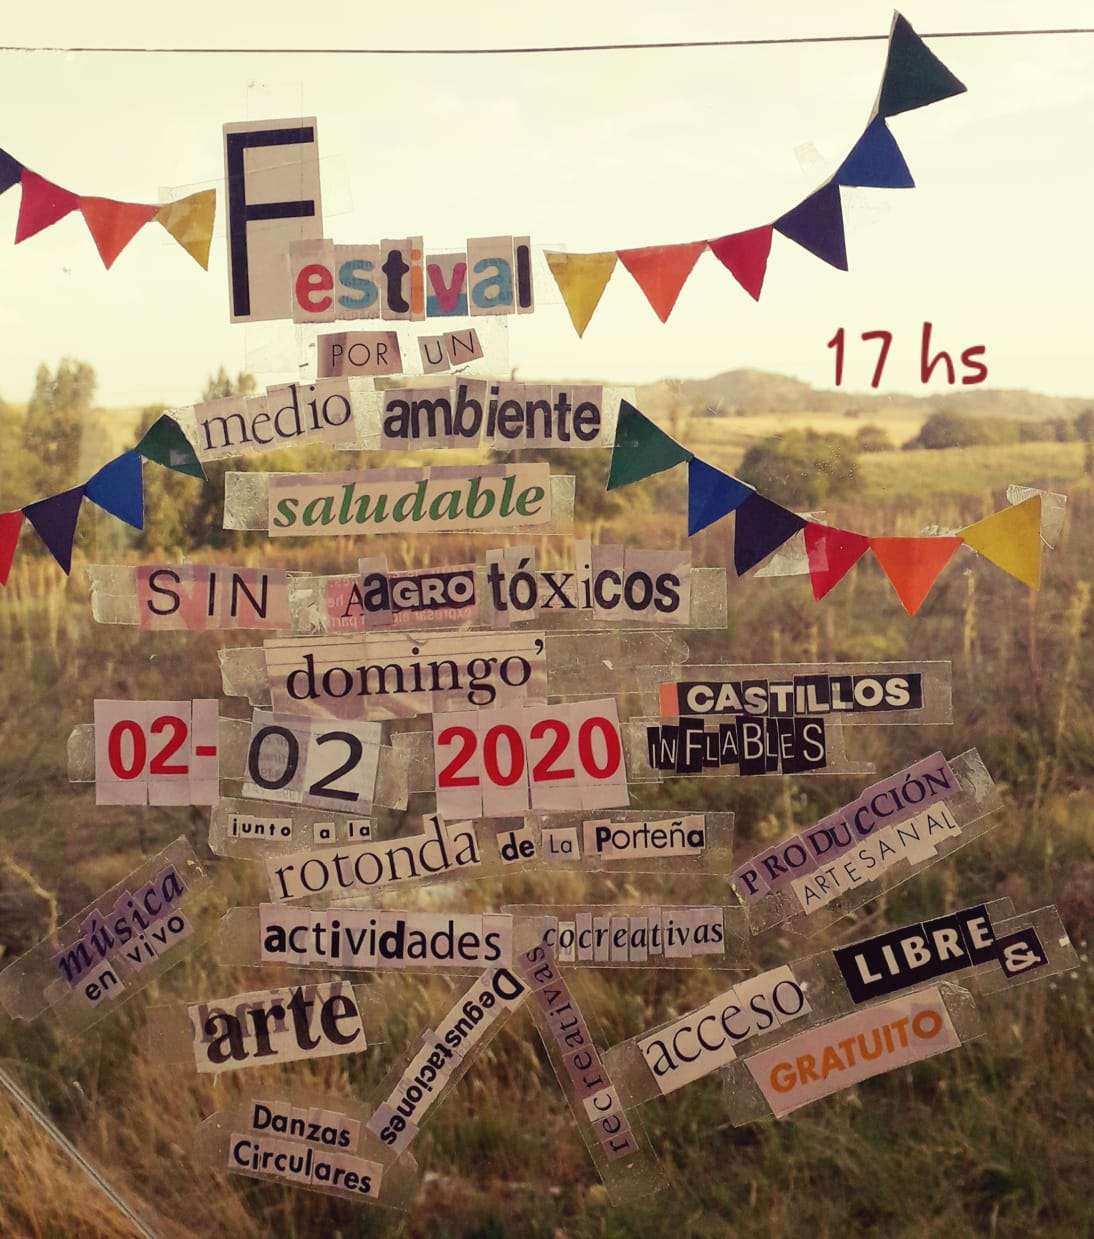 Luego de las fumigaciones, se realizará un festival por el medioambiente en La Porteña